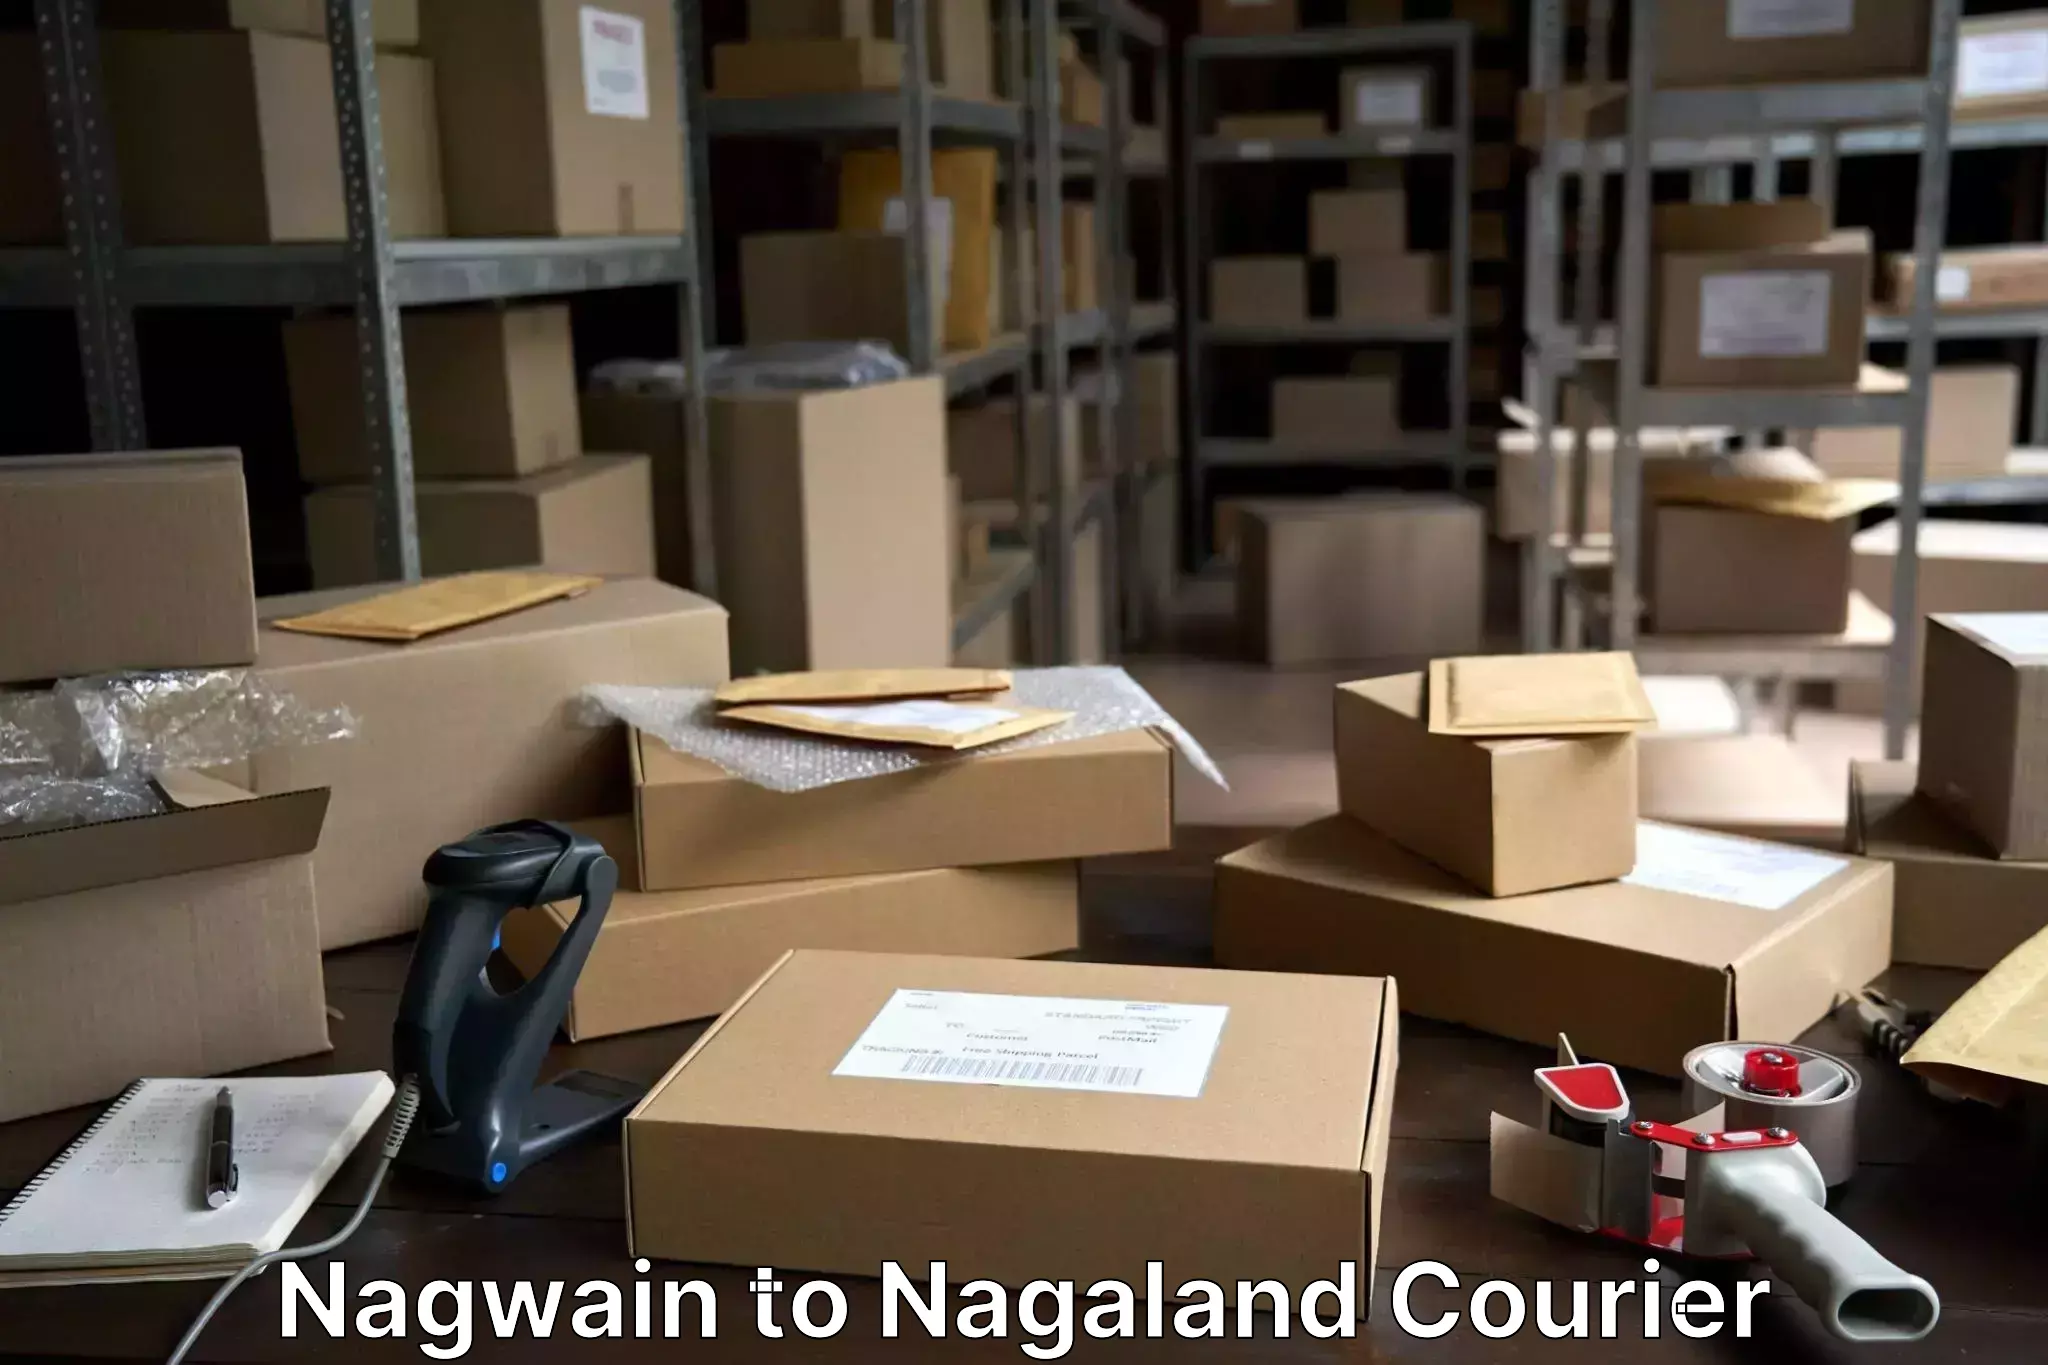 Luggage shipment specialists Nagwain to Nagaland